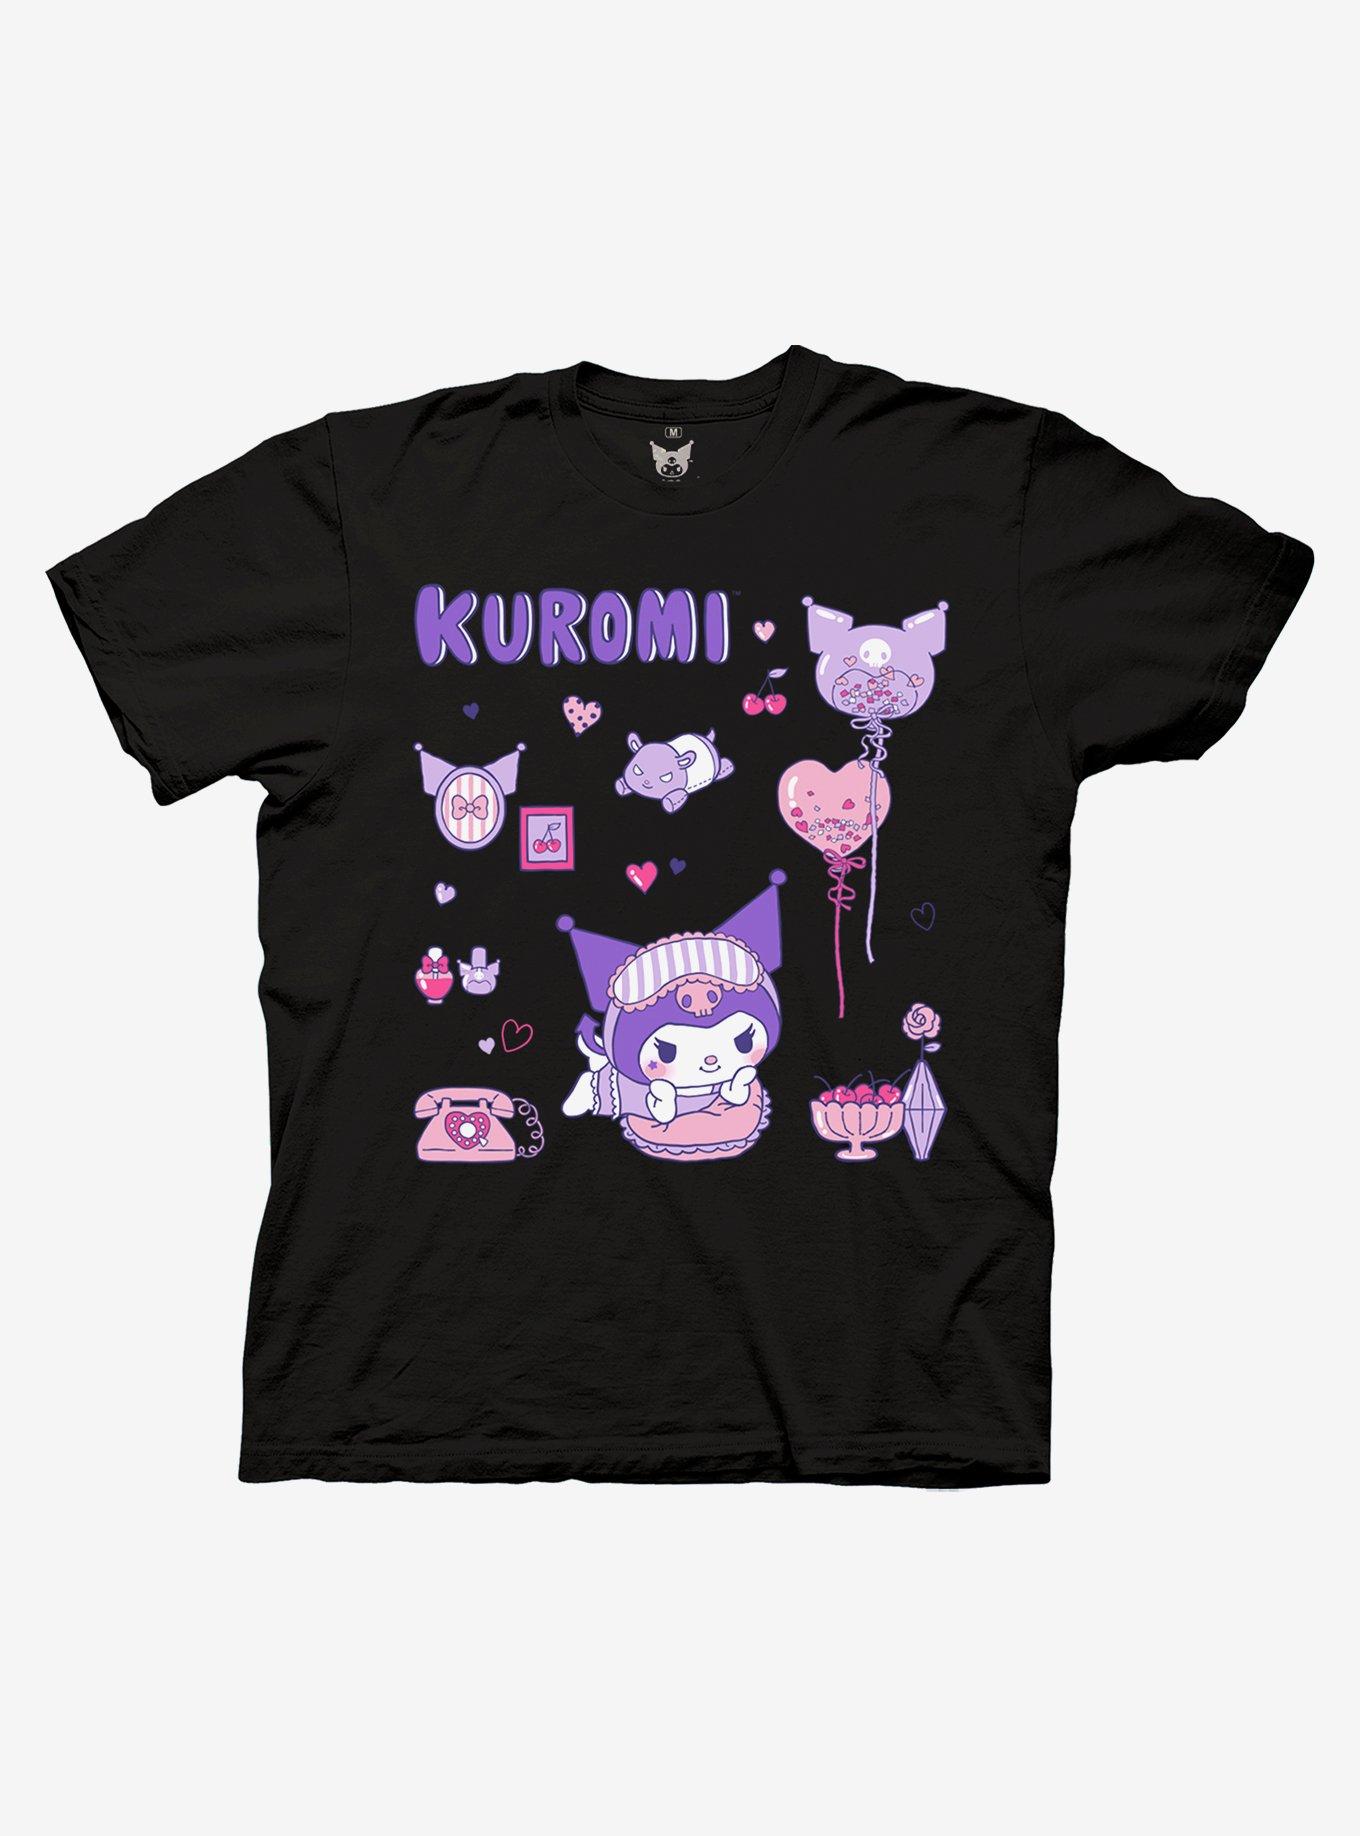 Kuromi Sleepover Boyfriend Fit Girls T-Shirt